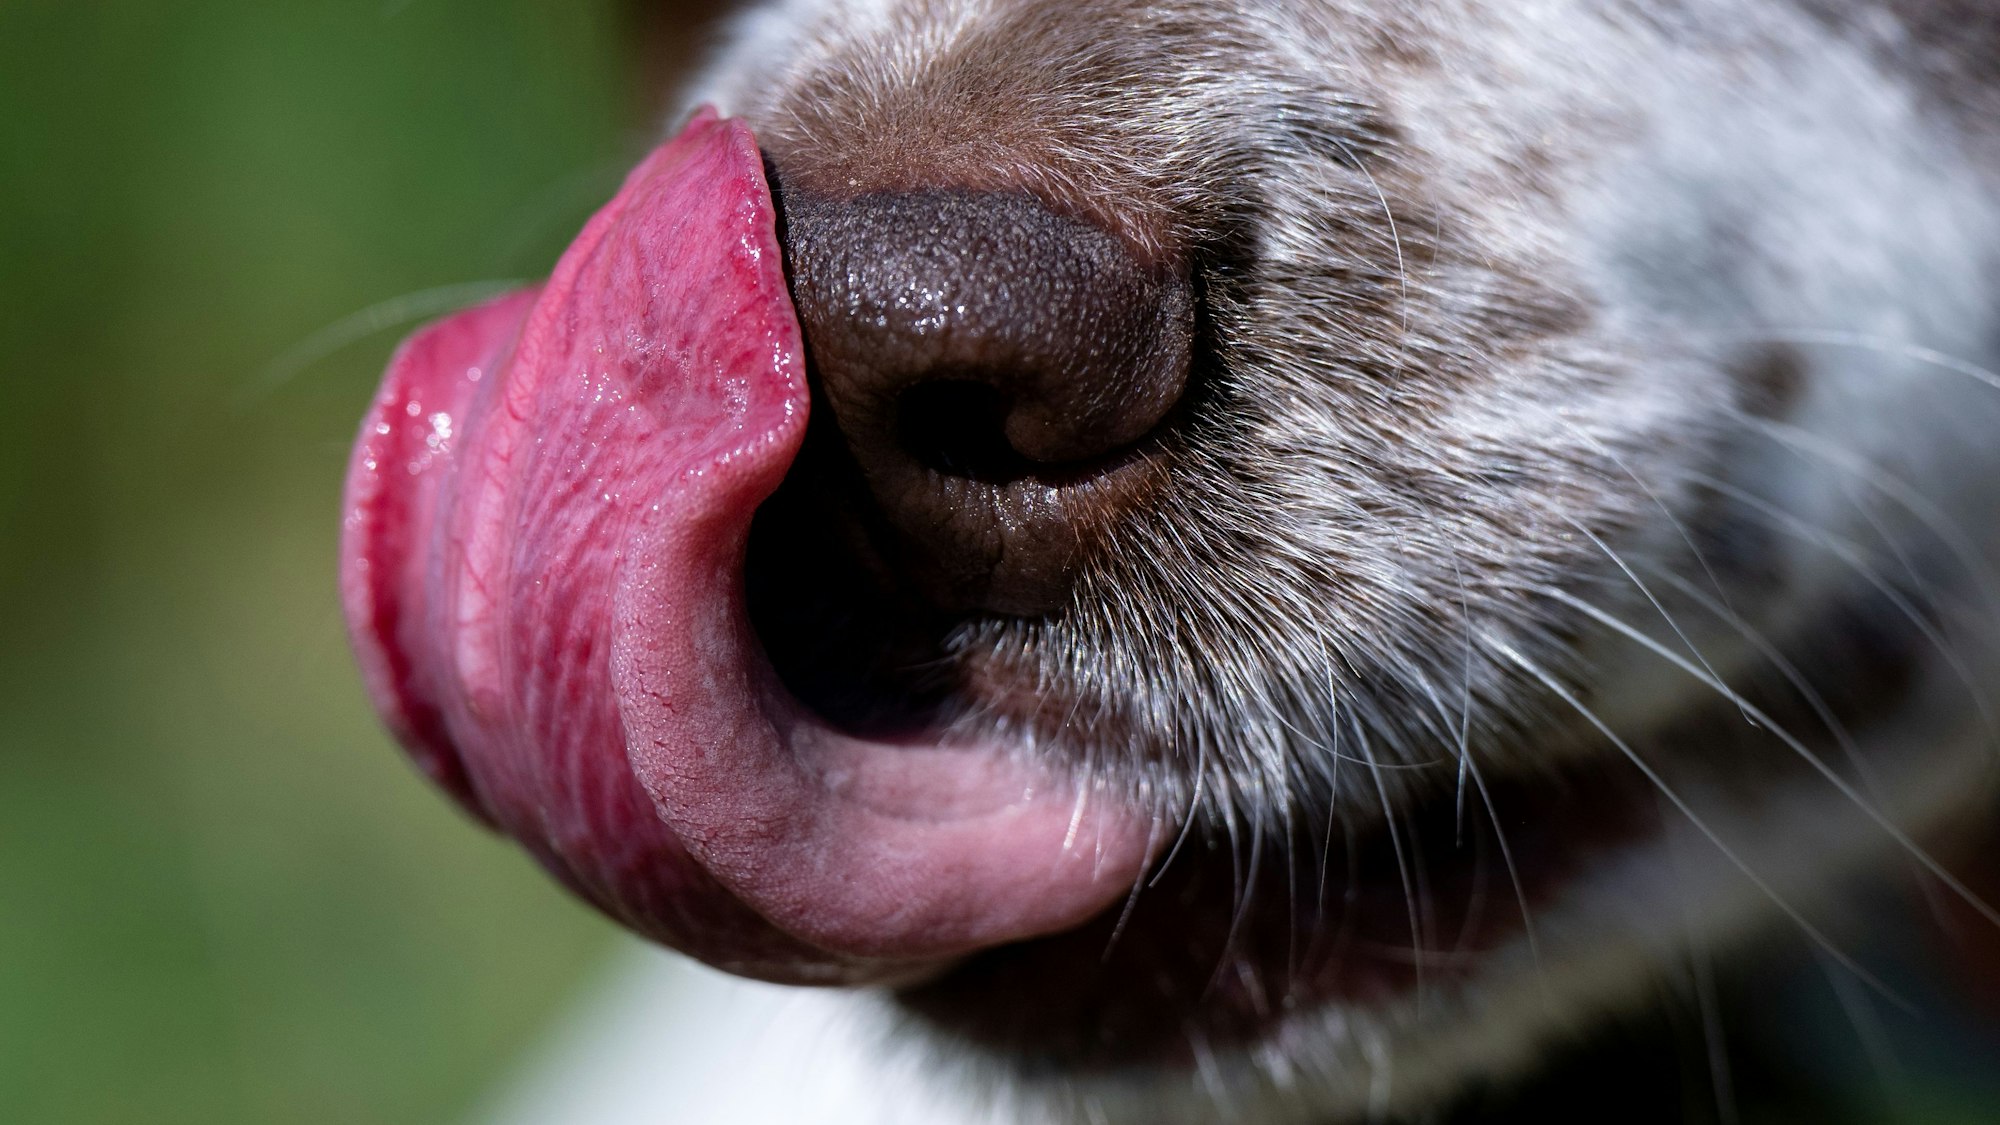 Eine Hündin leckt sich mit ihrer Zunge die Nase. Sie hat braun-weißes Fell. (Symbolbild)